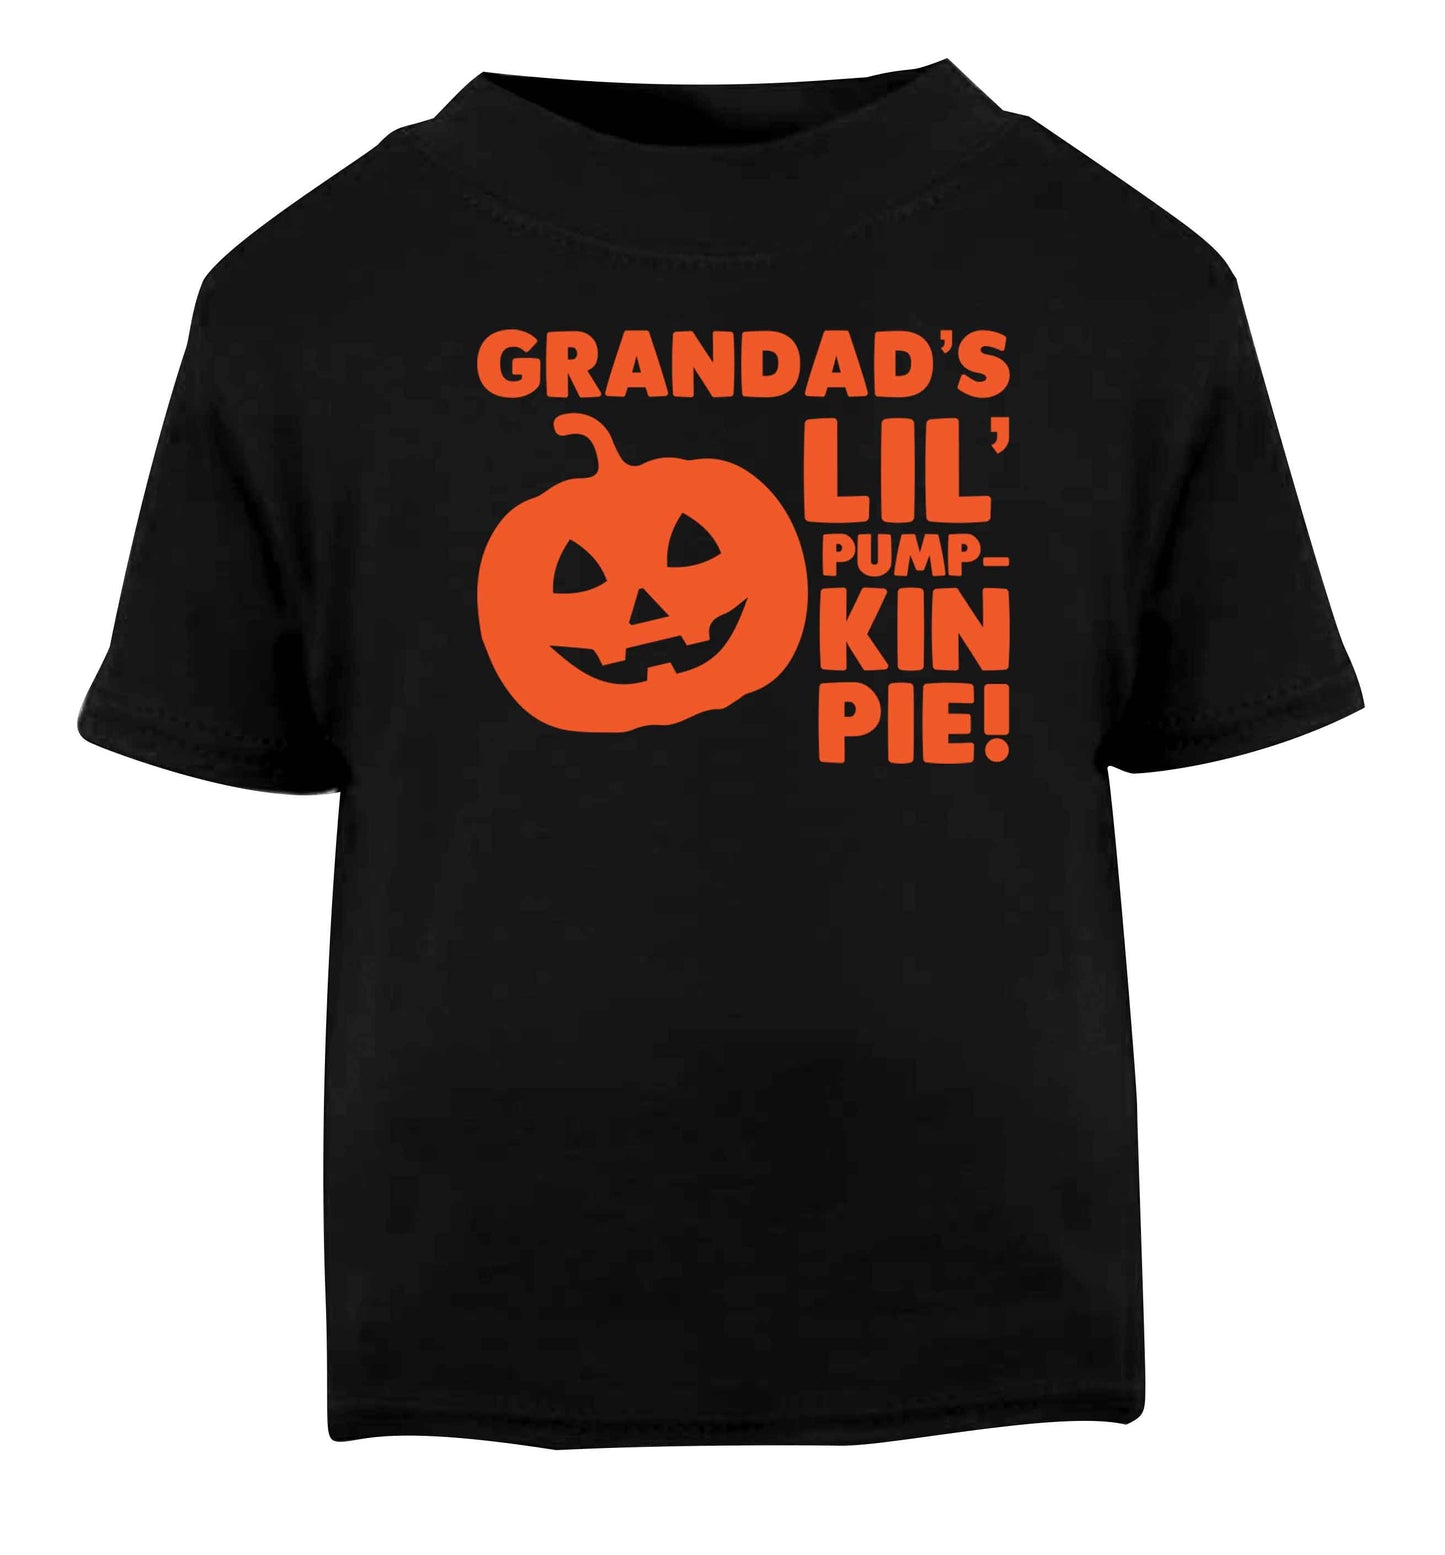 Grandad's lil' pumpkin pie Black baby toddler Tshirt 2 years